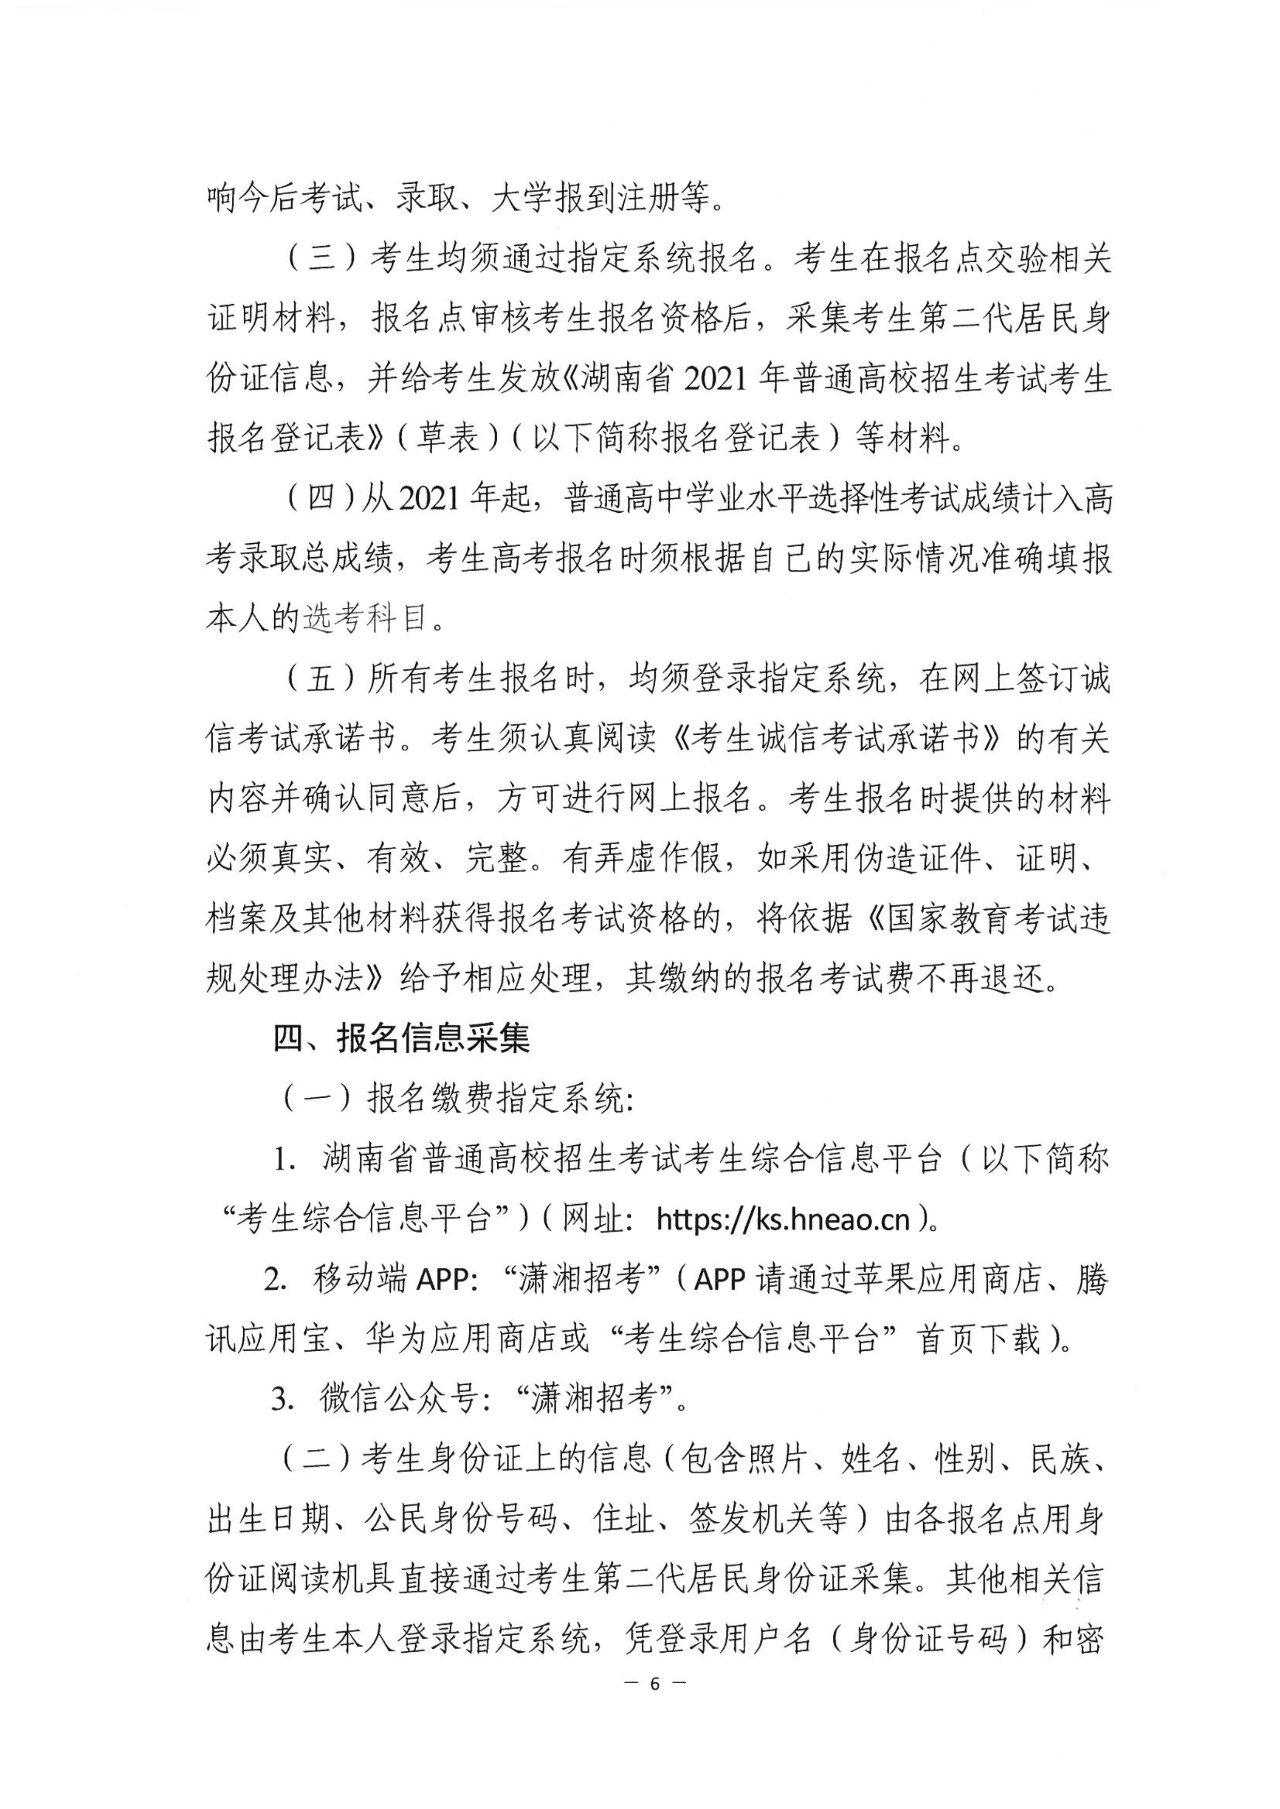 关于做好湖南省2021年普通高等学校招生考试报名工作的通知